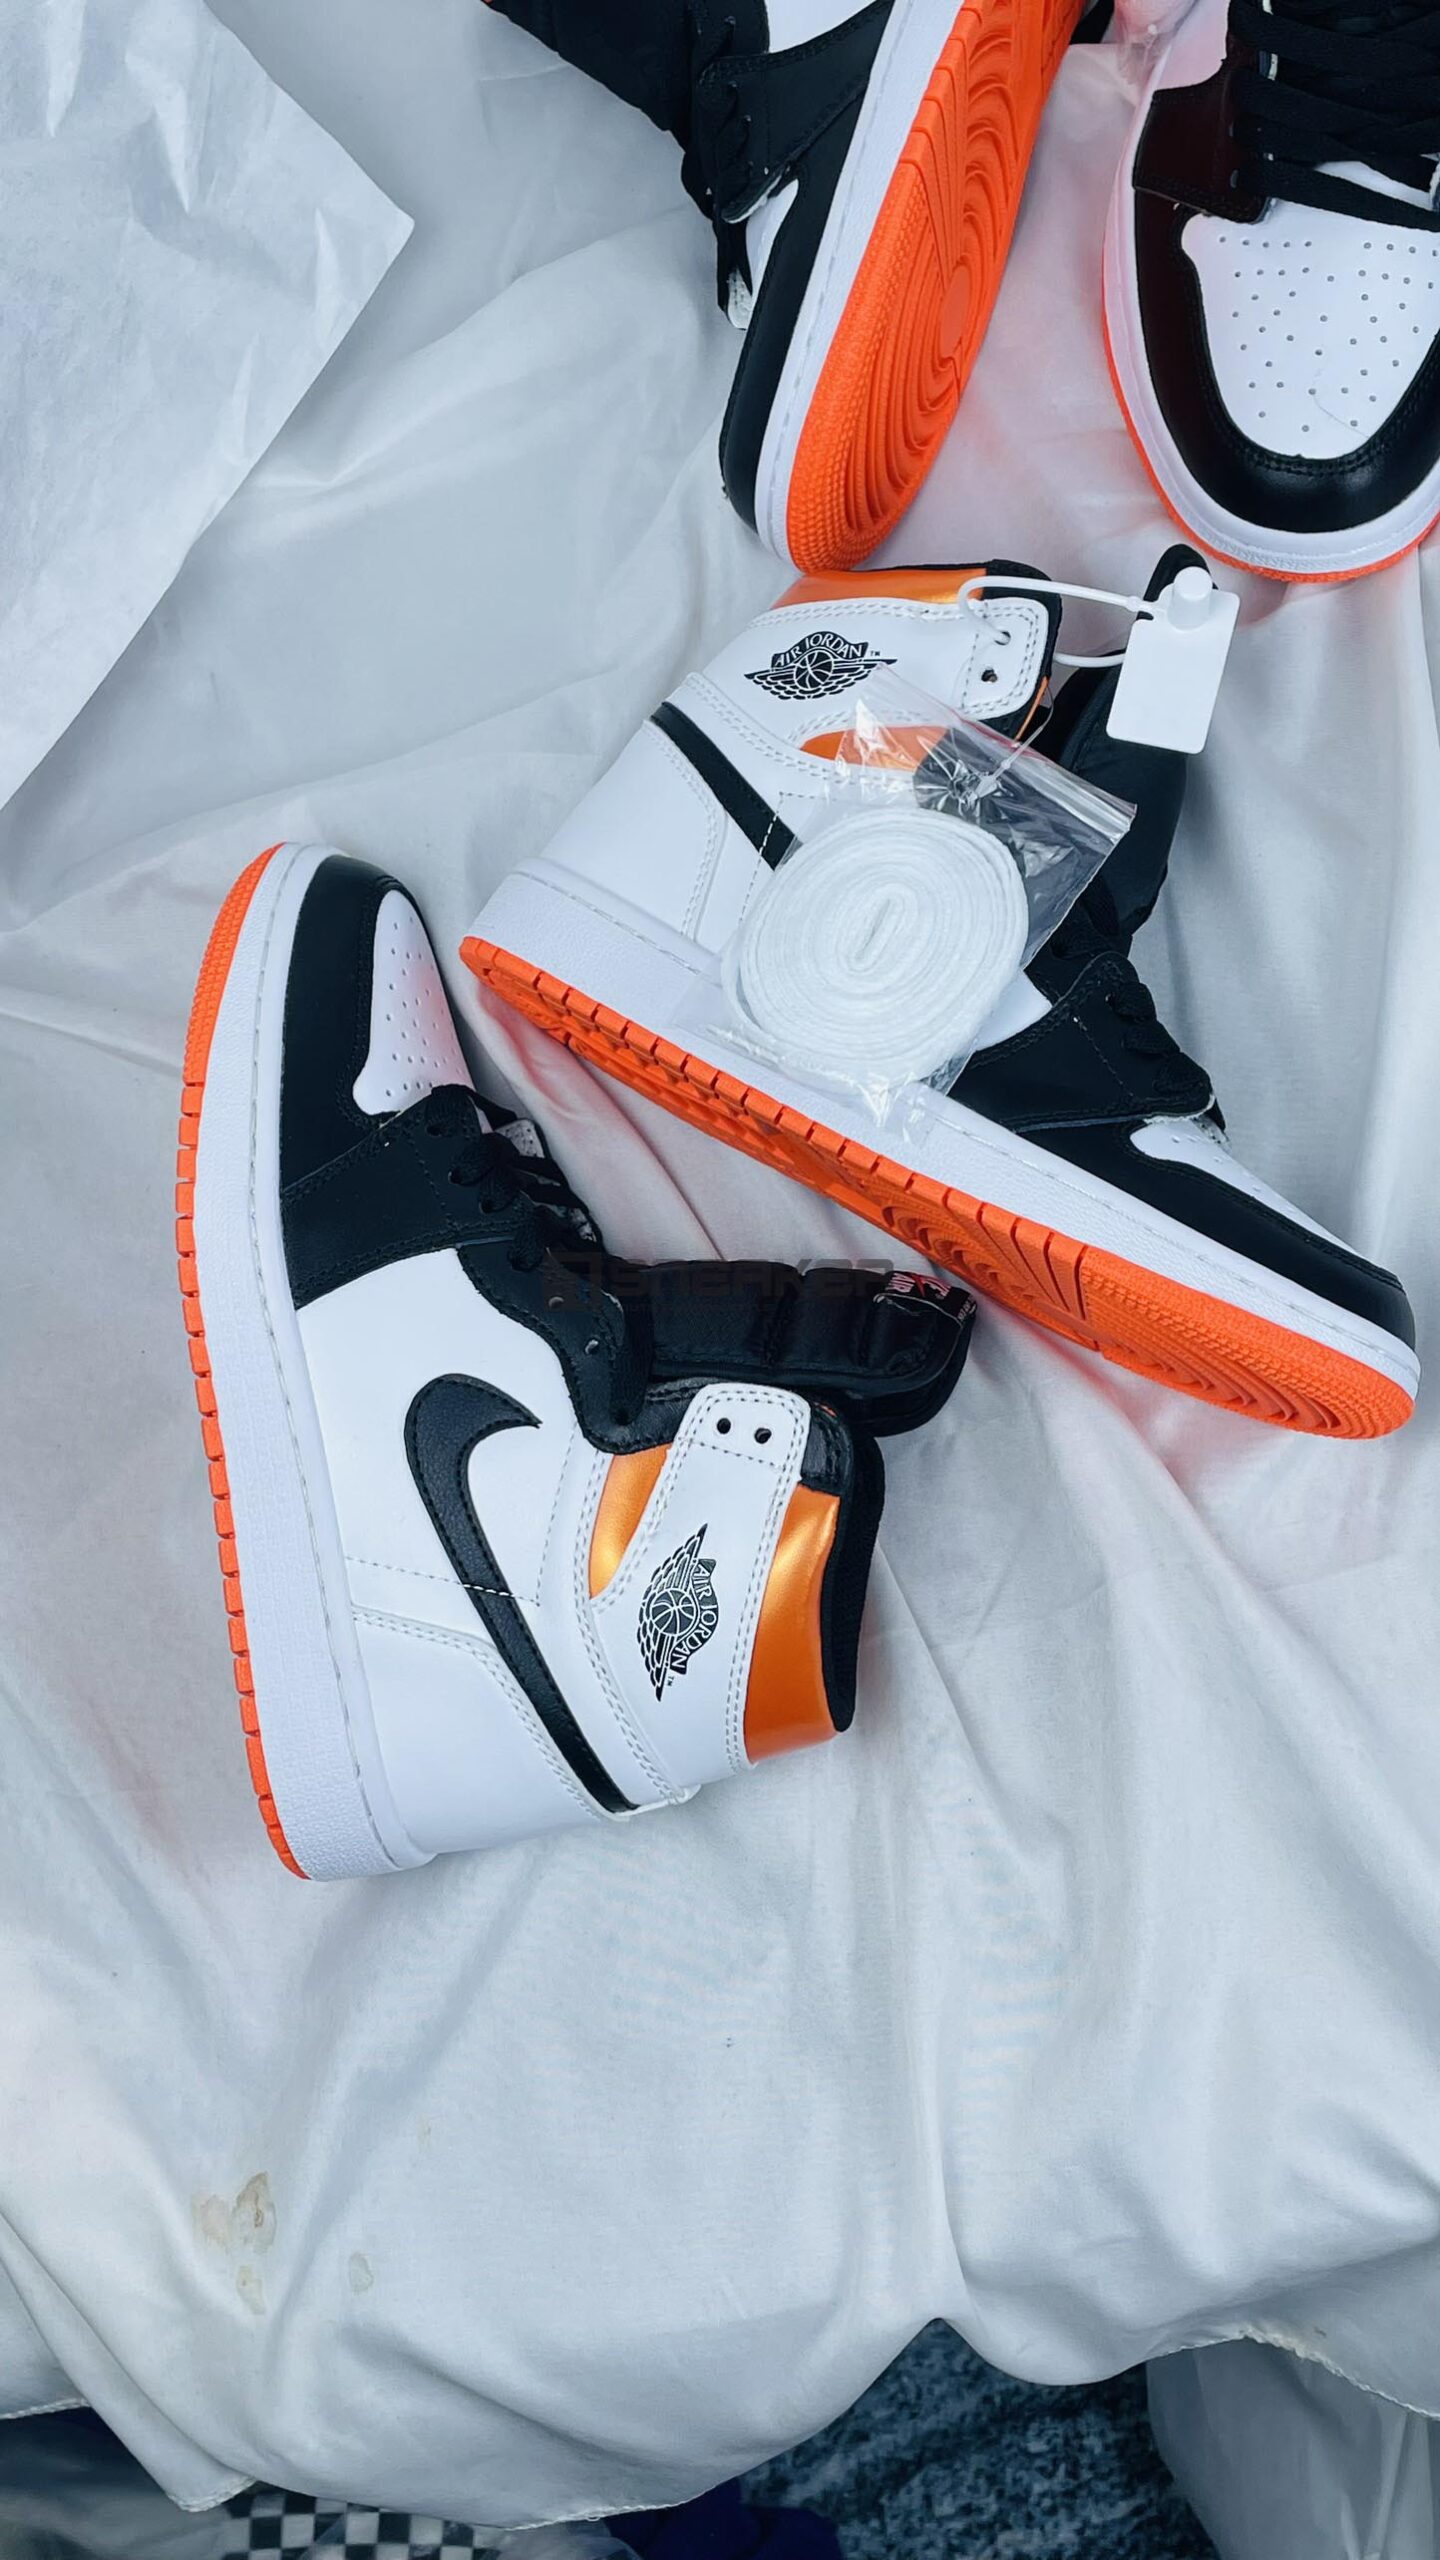 Giày Nike Air Jordan 1 Retro High OG Electro Orange + bộ giây màu trắng chất lừ